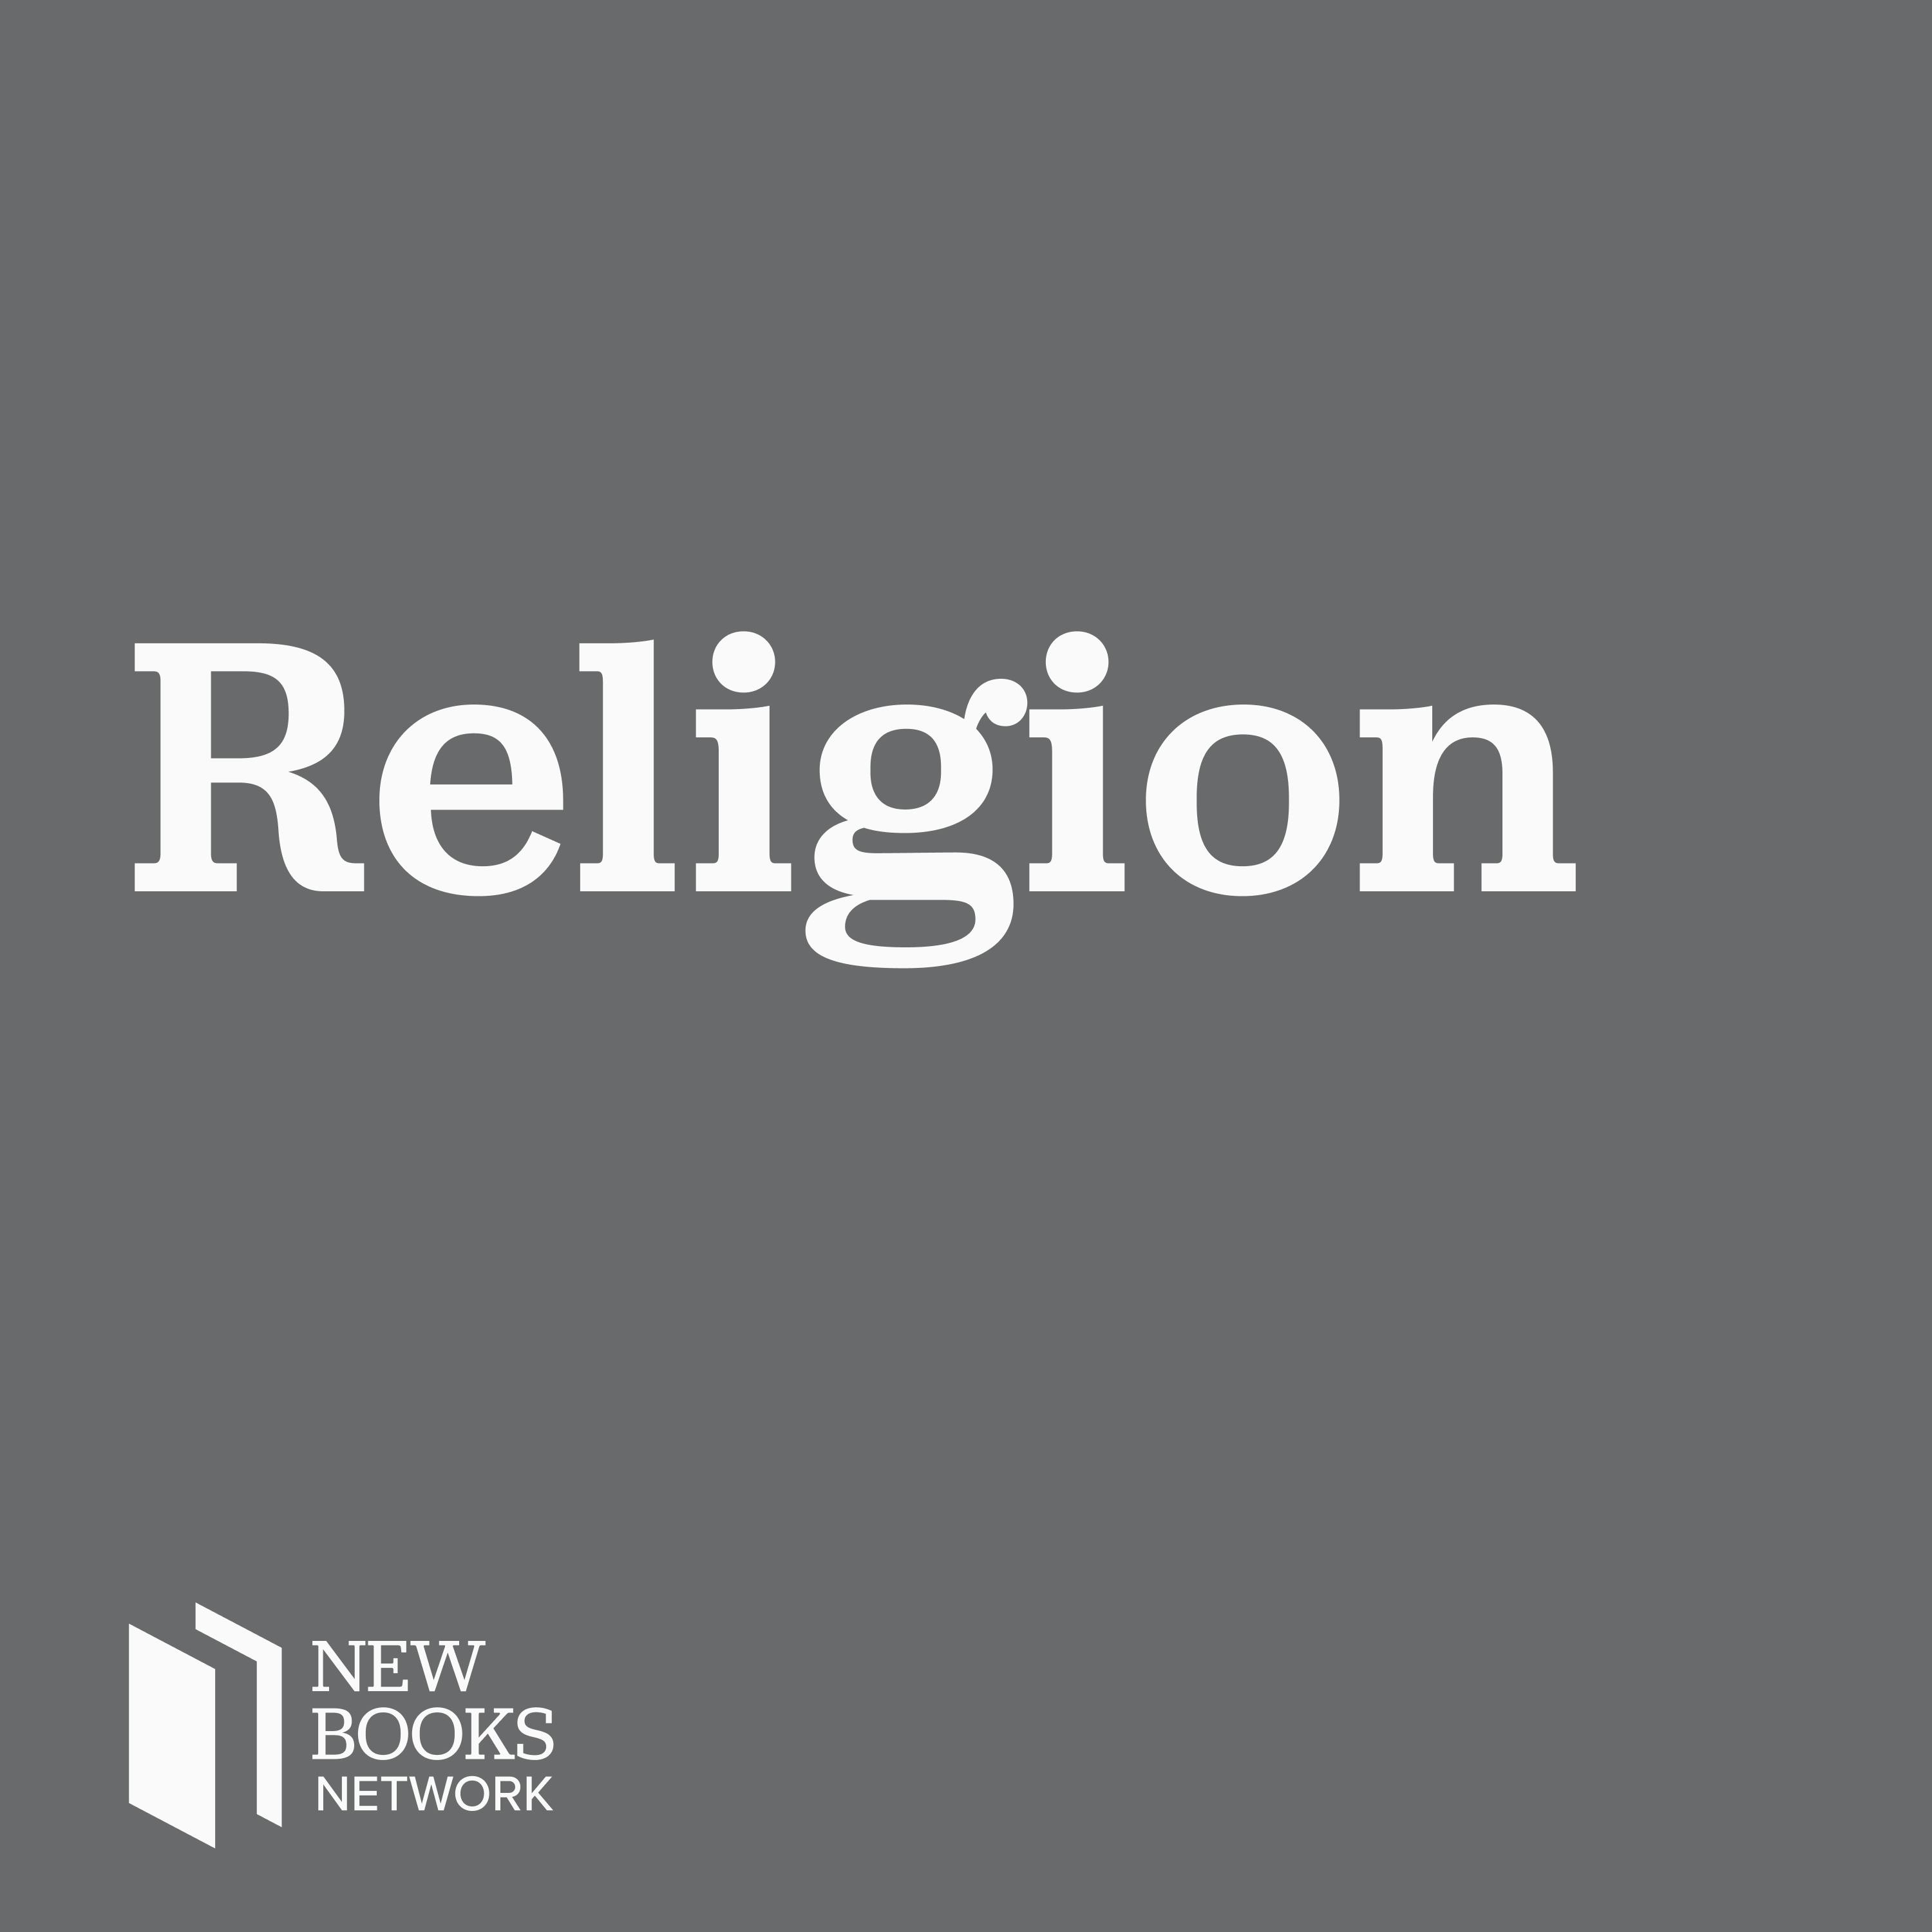 New Books in Religion